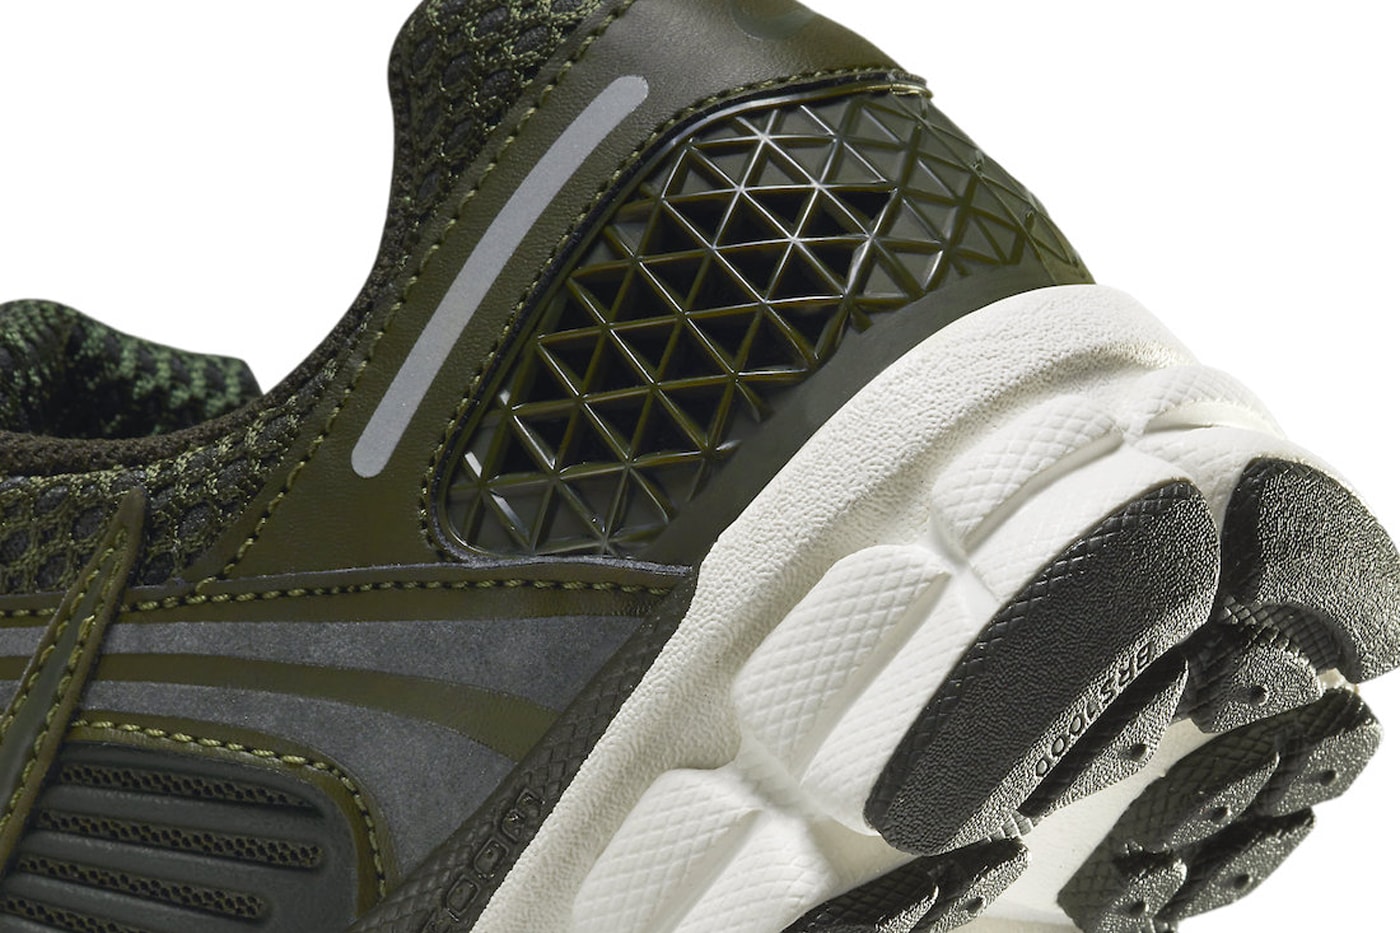 Nike Zoom Vomero 5 Releases in "Cargo Khaki" Cargo Khaki/Sequoia-Sail-Metallic Silver FQ8898-325